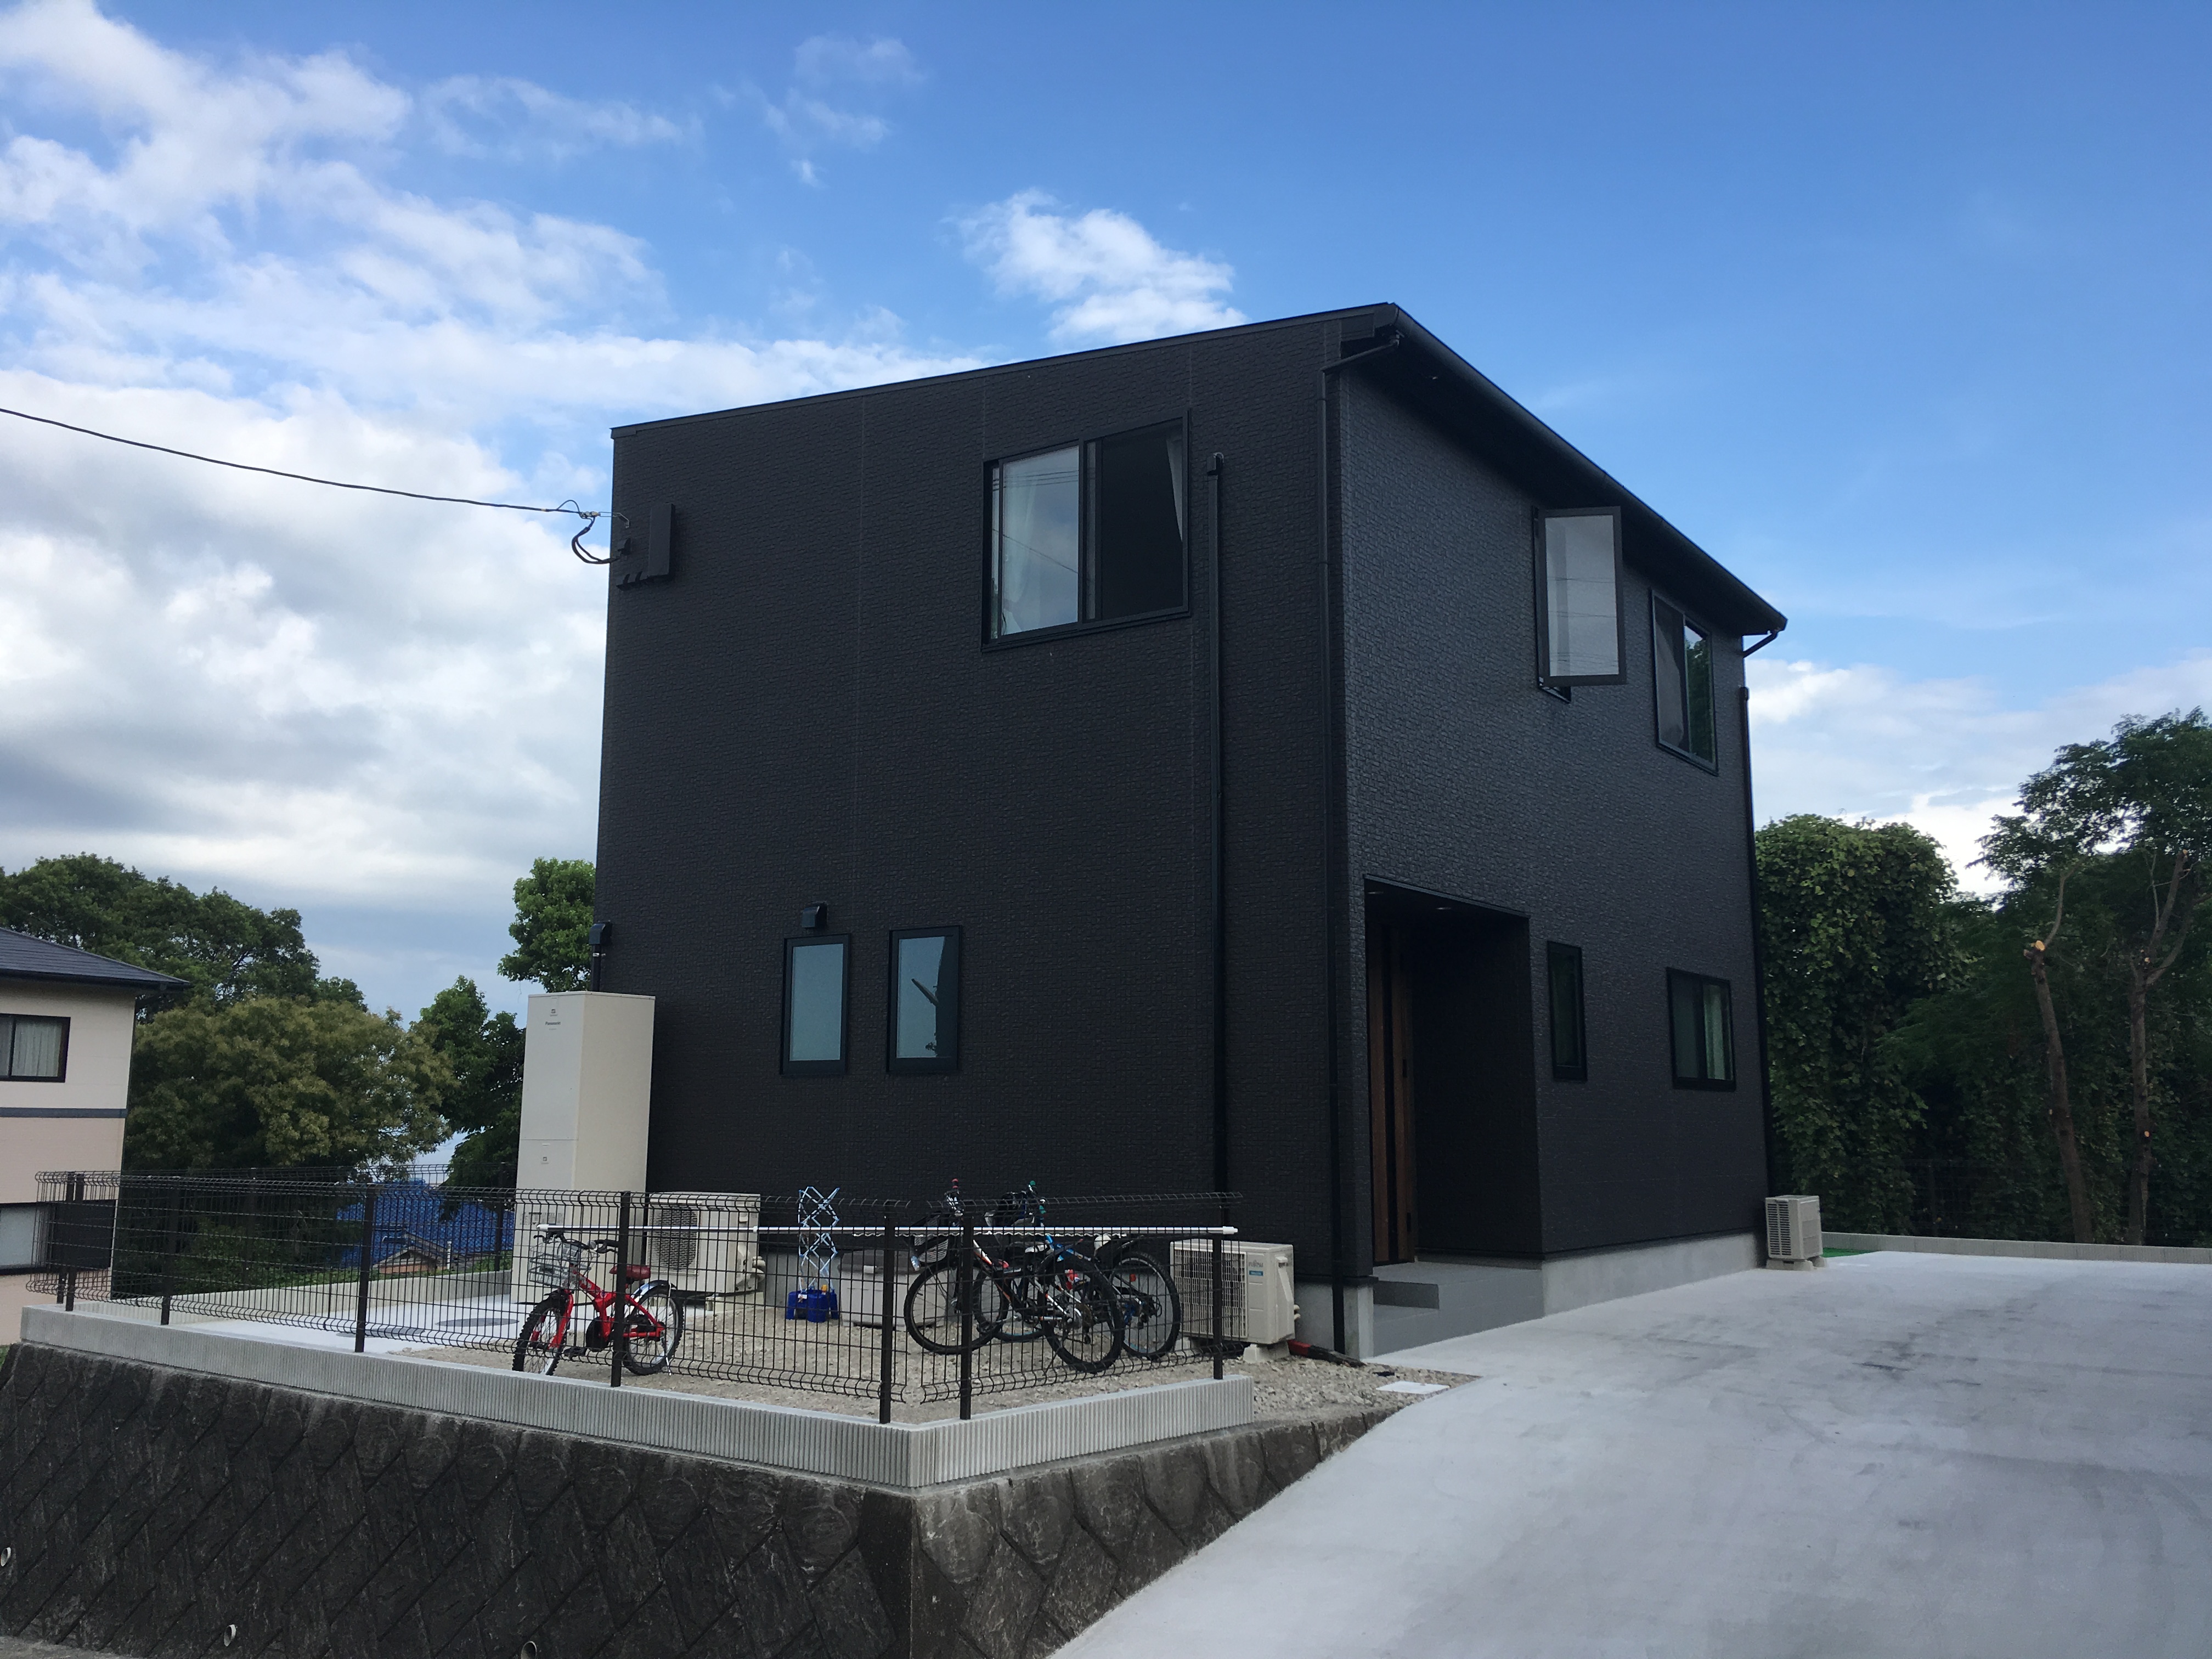 収納たっぷりの黒い家 コトレ ゼロの新築住宅 長崎 大村 諫早 島原の家賃並みの家づくり